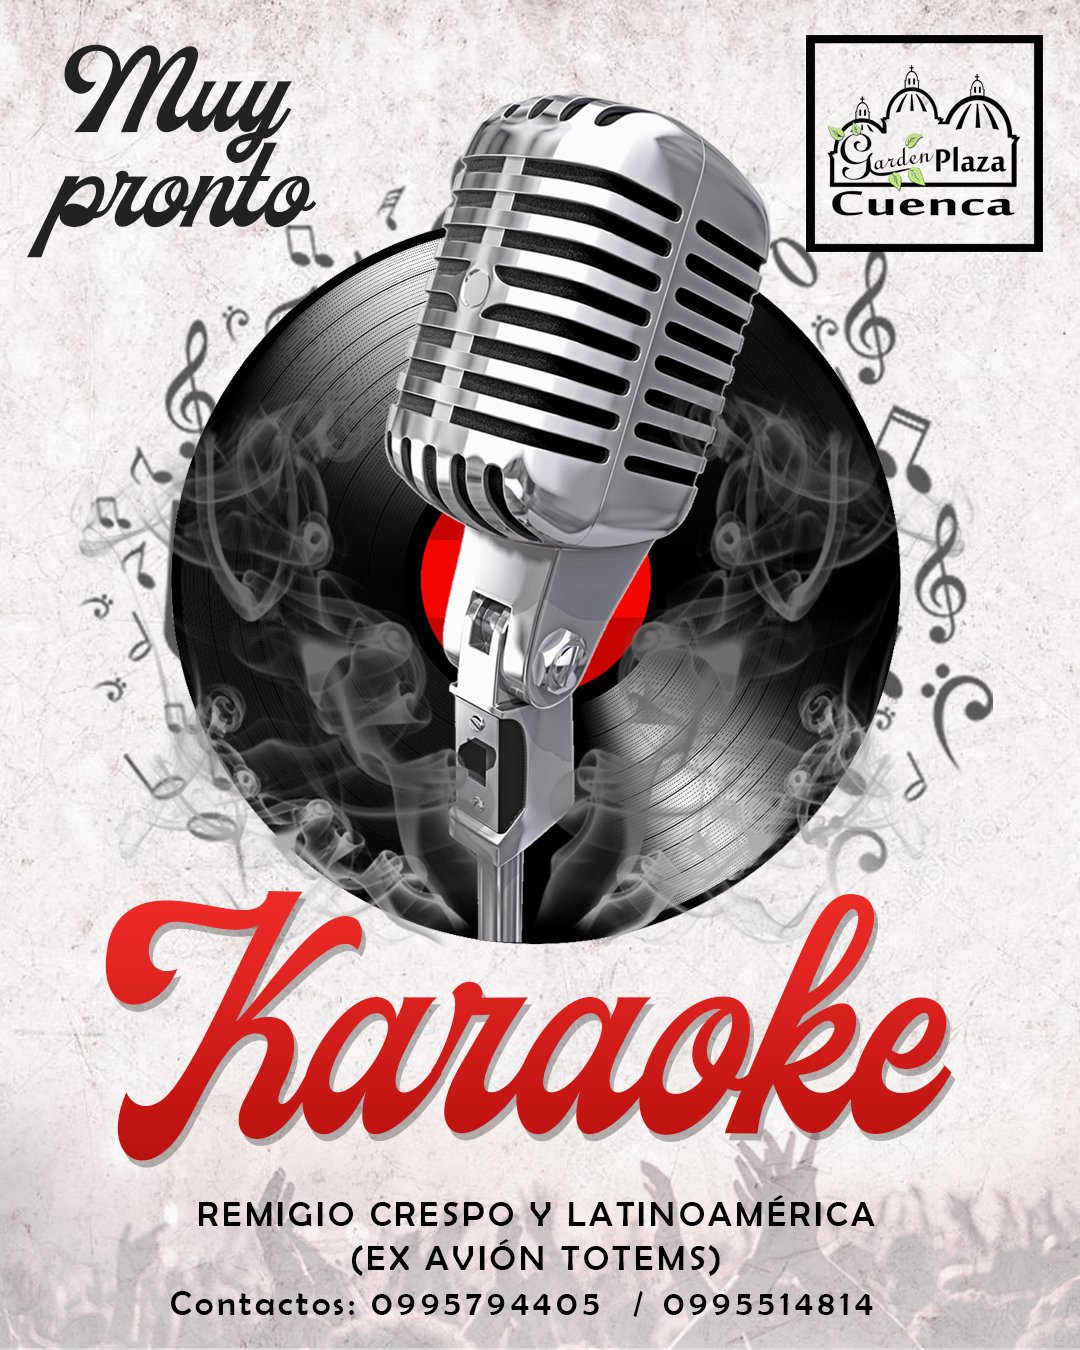 Flyer publicitario Karaoke